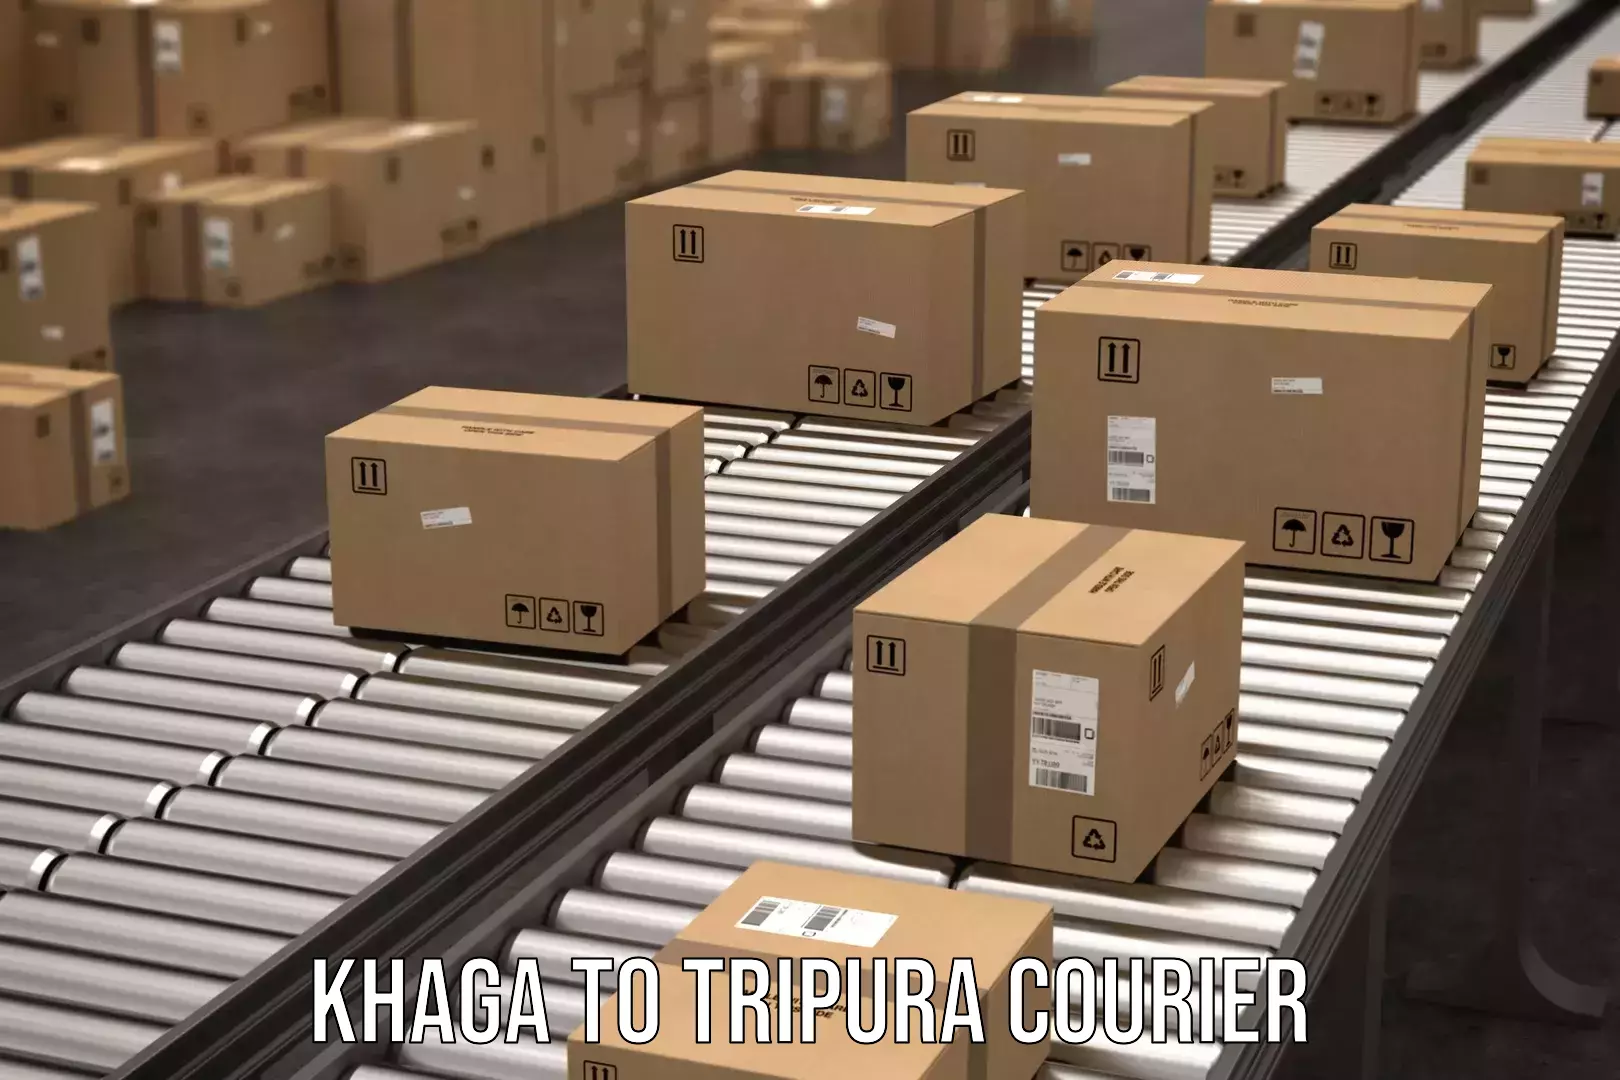 Next day courier Khaga to West Tripura